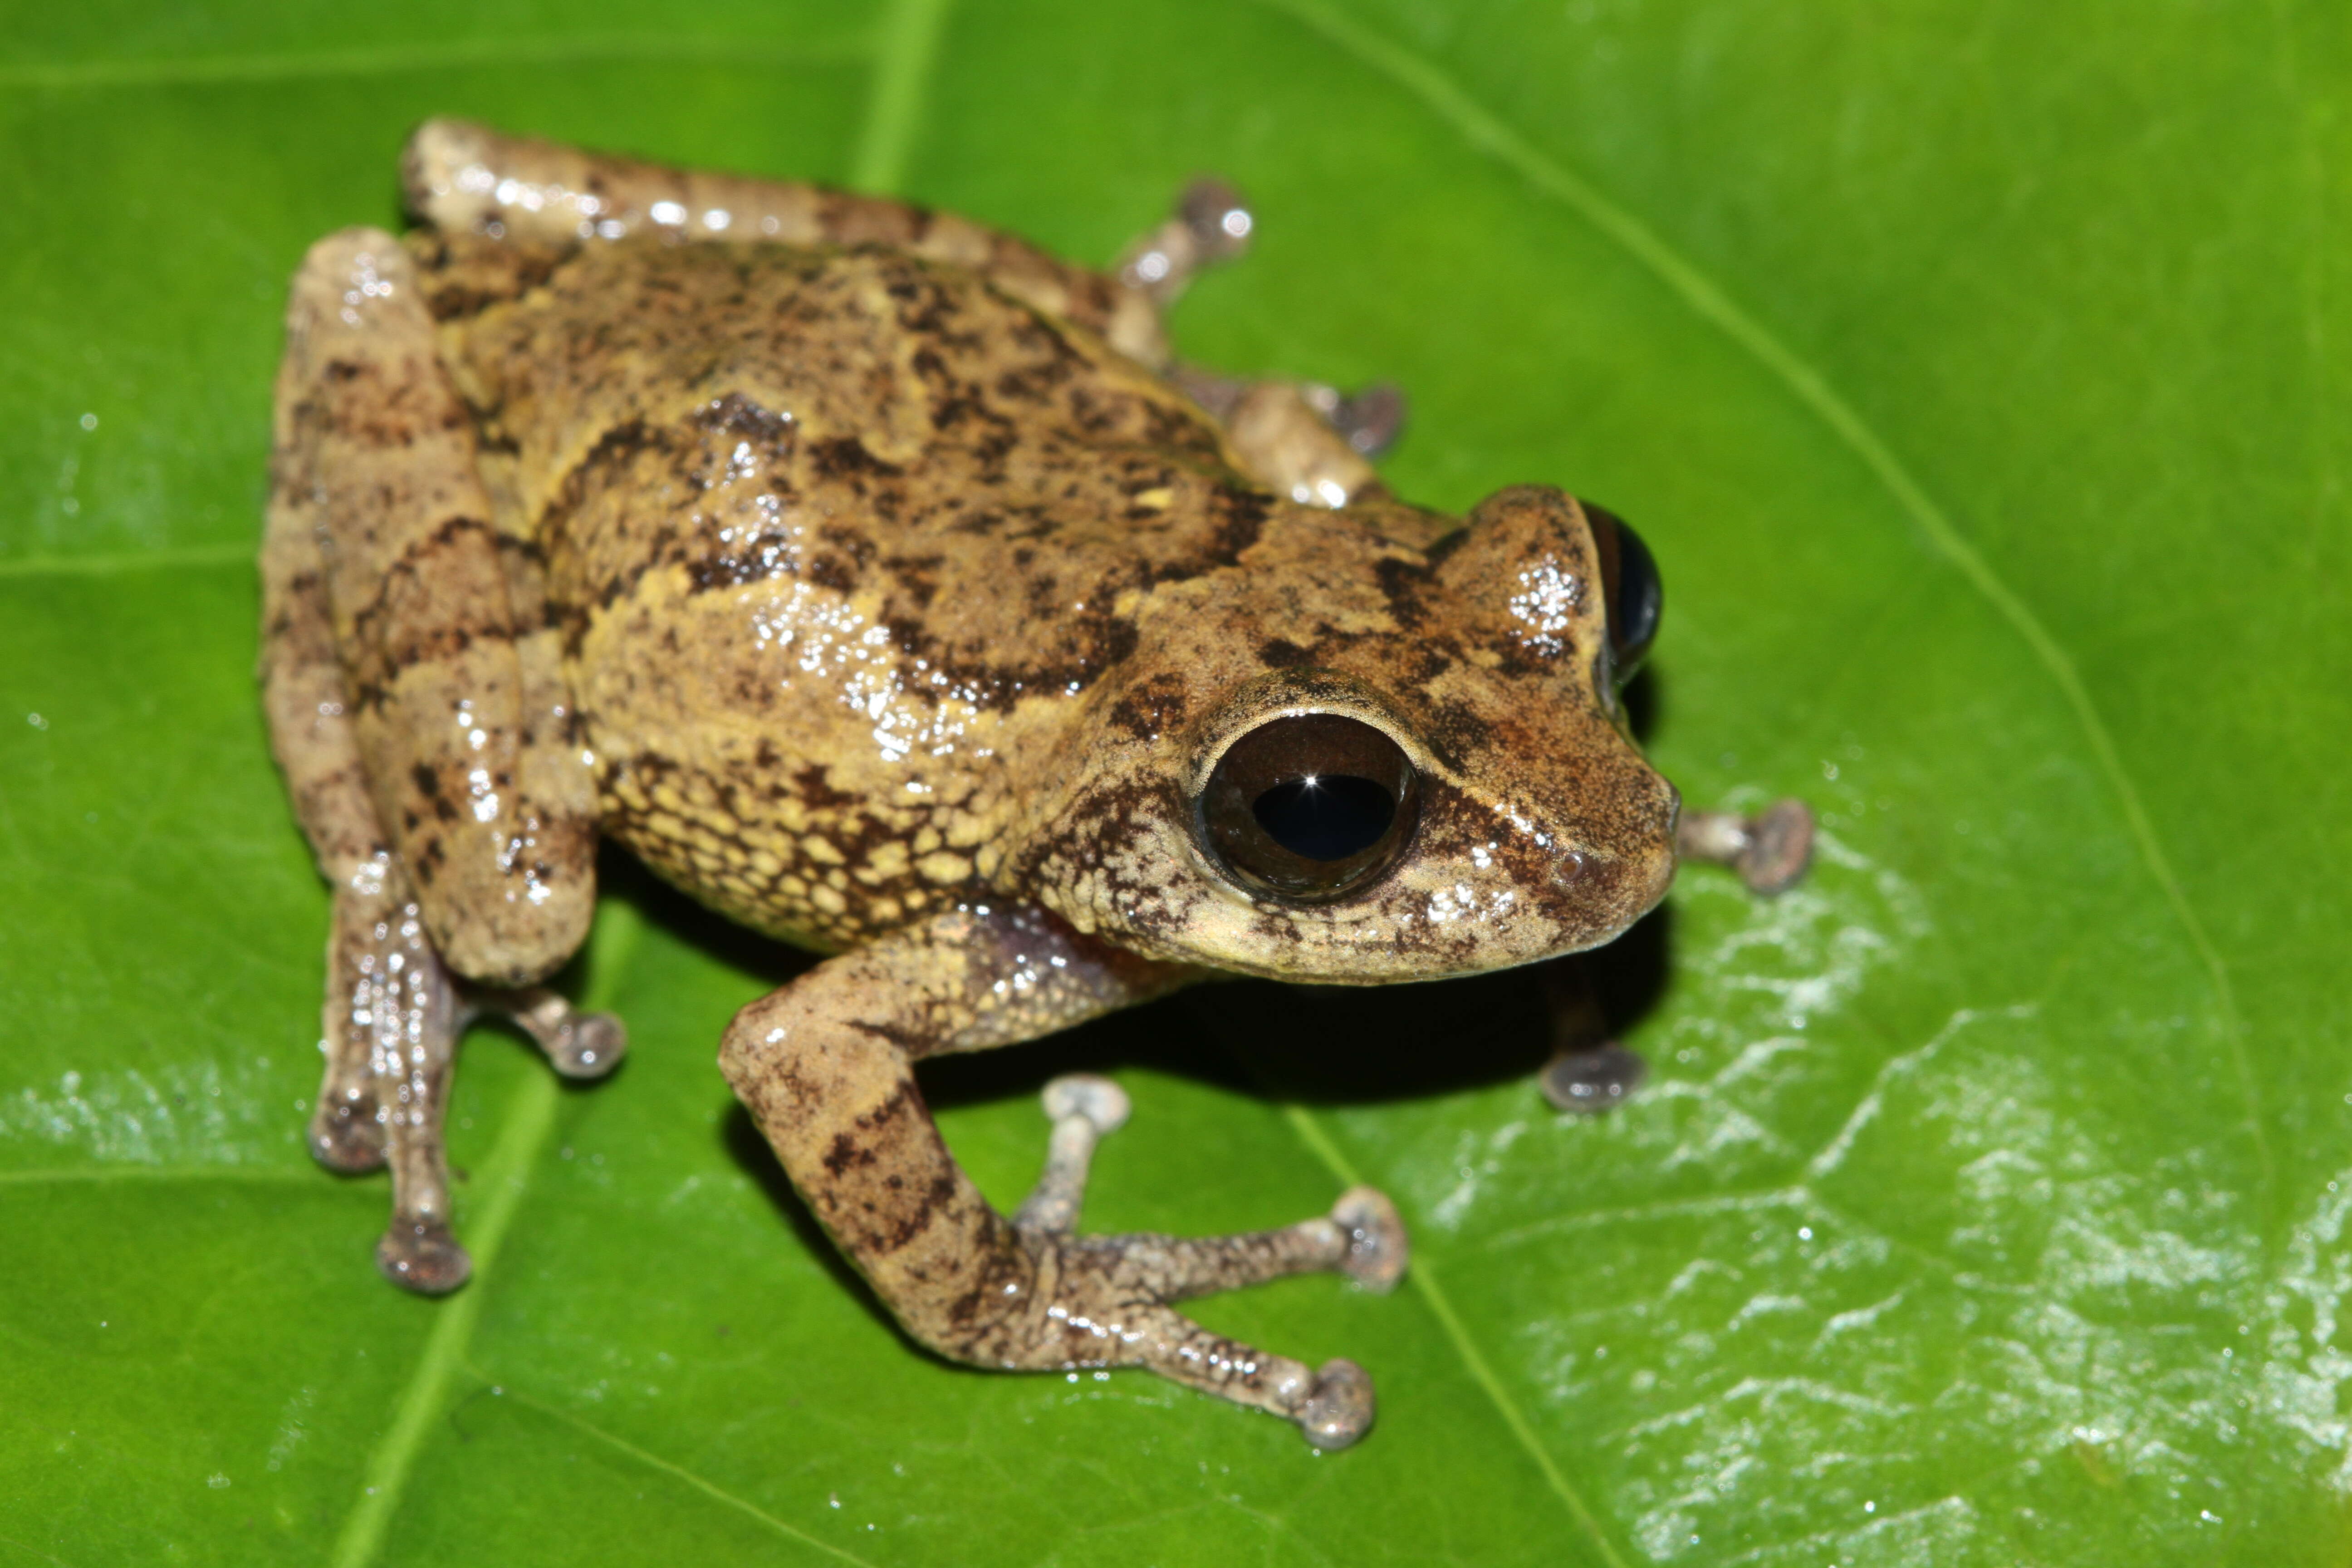 Image of Munnar bush frog